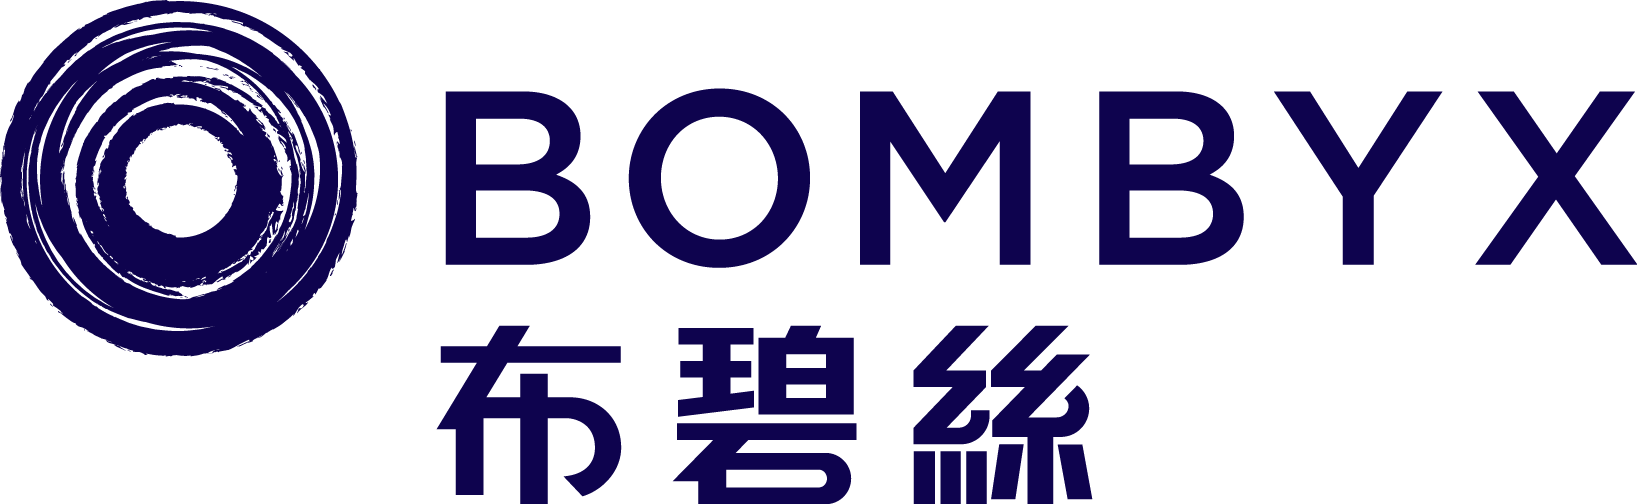 Bombyx_logo.png